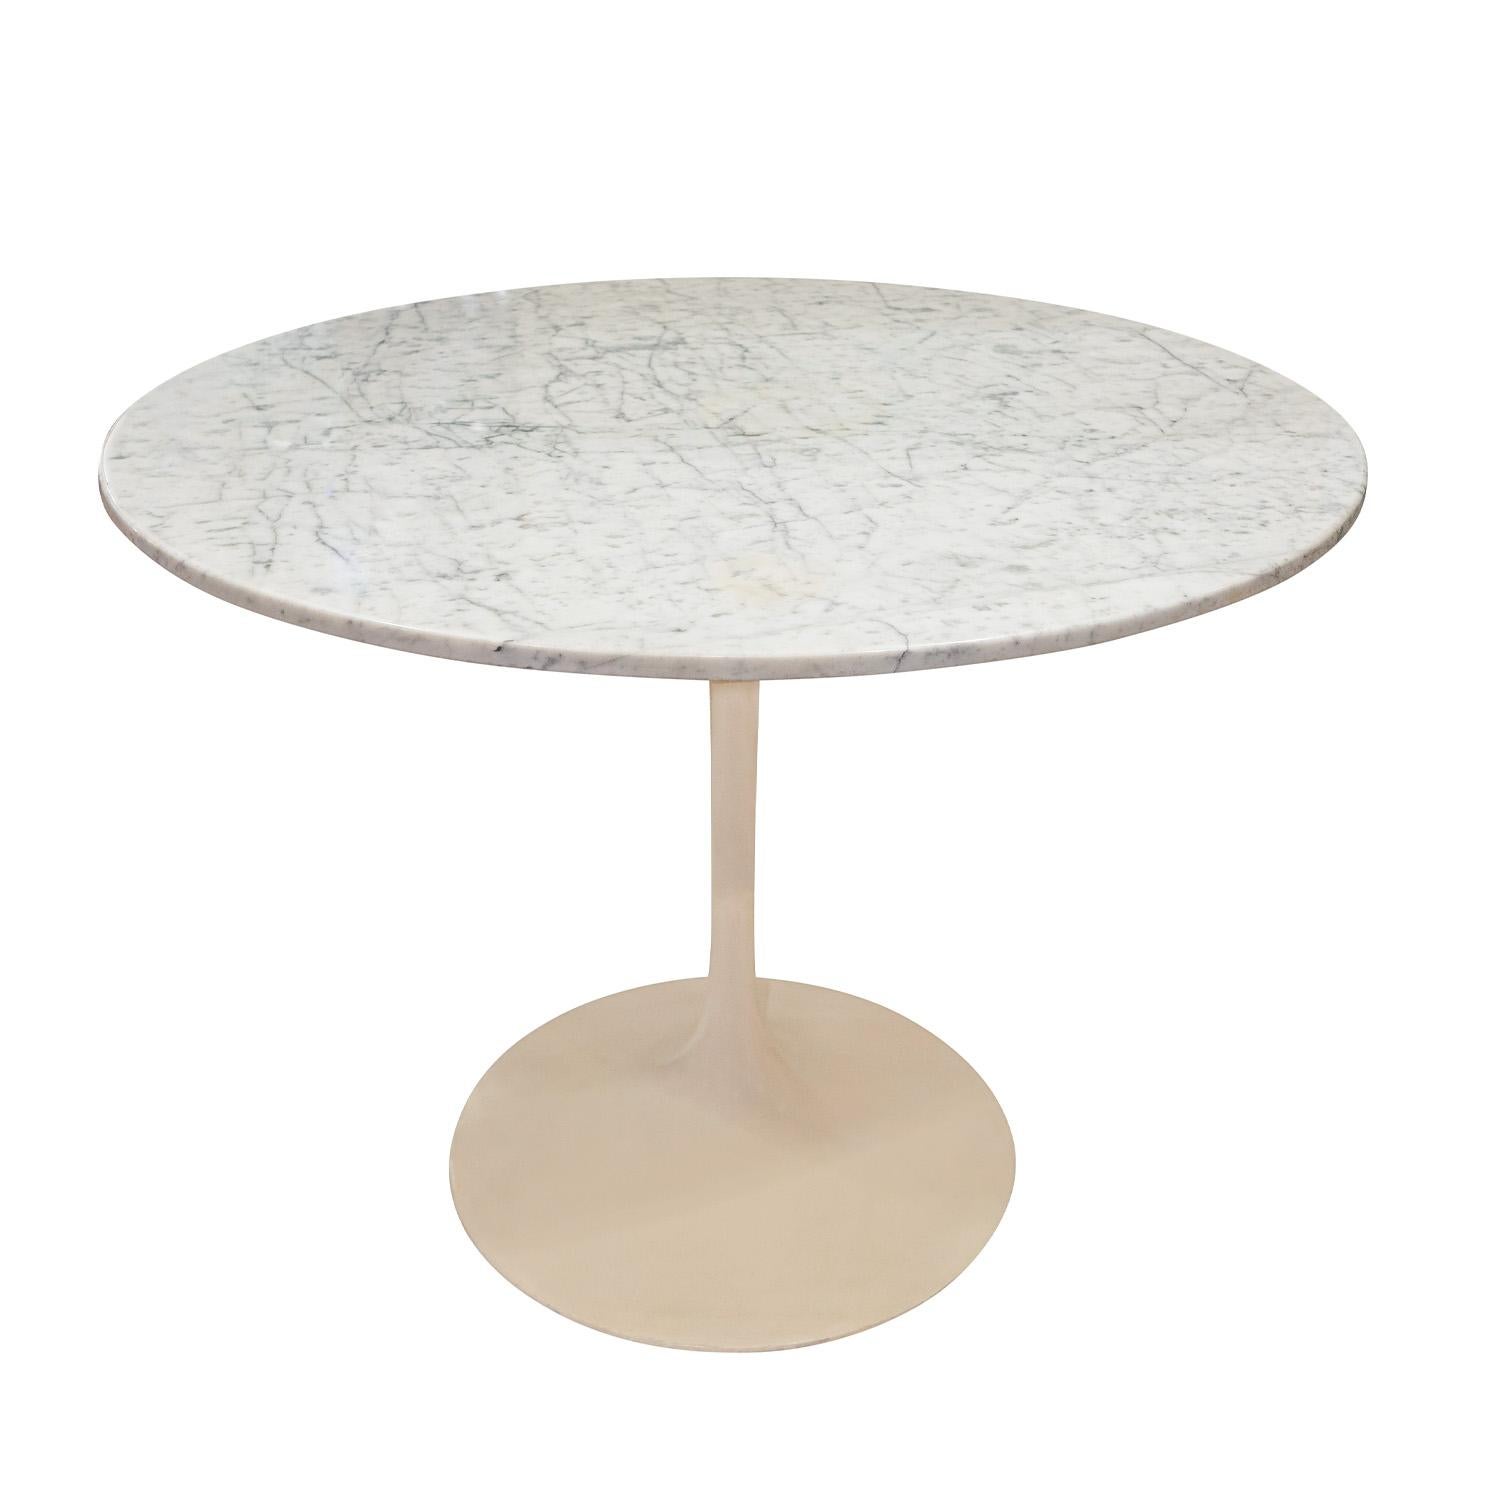 Table à manger/jeu de style Steele avec base en acier moulé et laqué et plateau en marbre poli sur mesure, Italie, années 1990.  Le plateau en marbre figuré est magnifique.